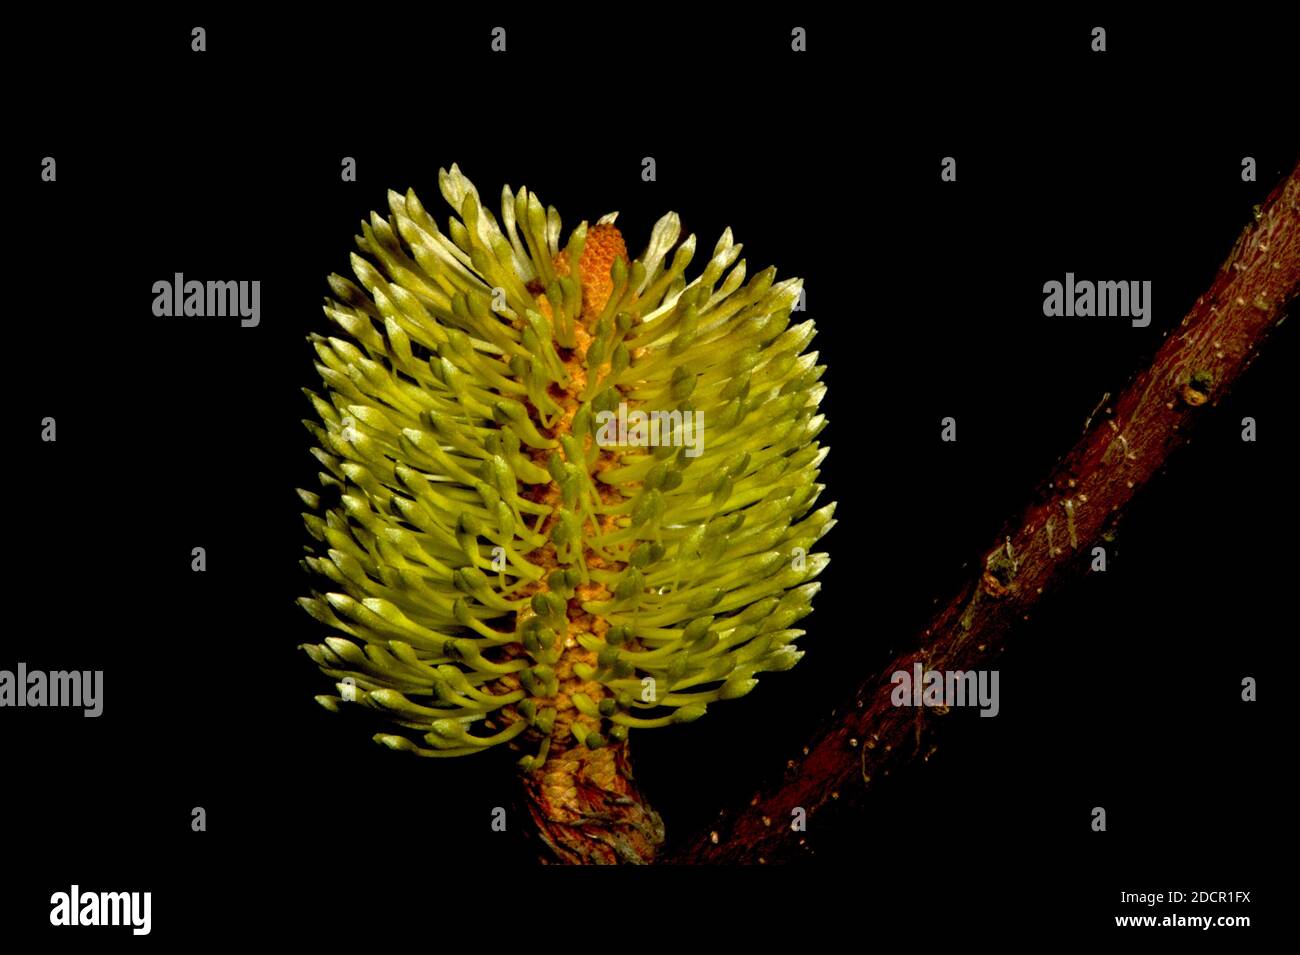 Eine frische Banksia Blume - gerade eröffnet. Diese hübschen Blumen sind bei Vögeln und Insekten beliebt und sehen schnell zerlumpt und gefressen aus! Stockfoto